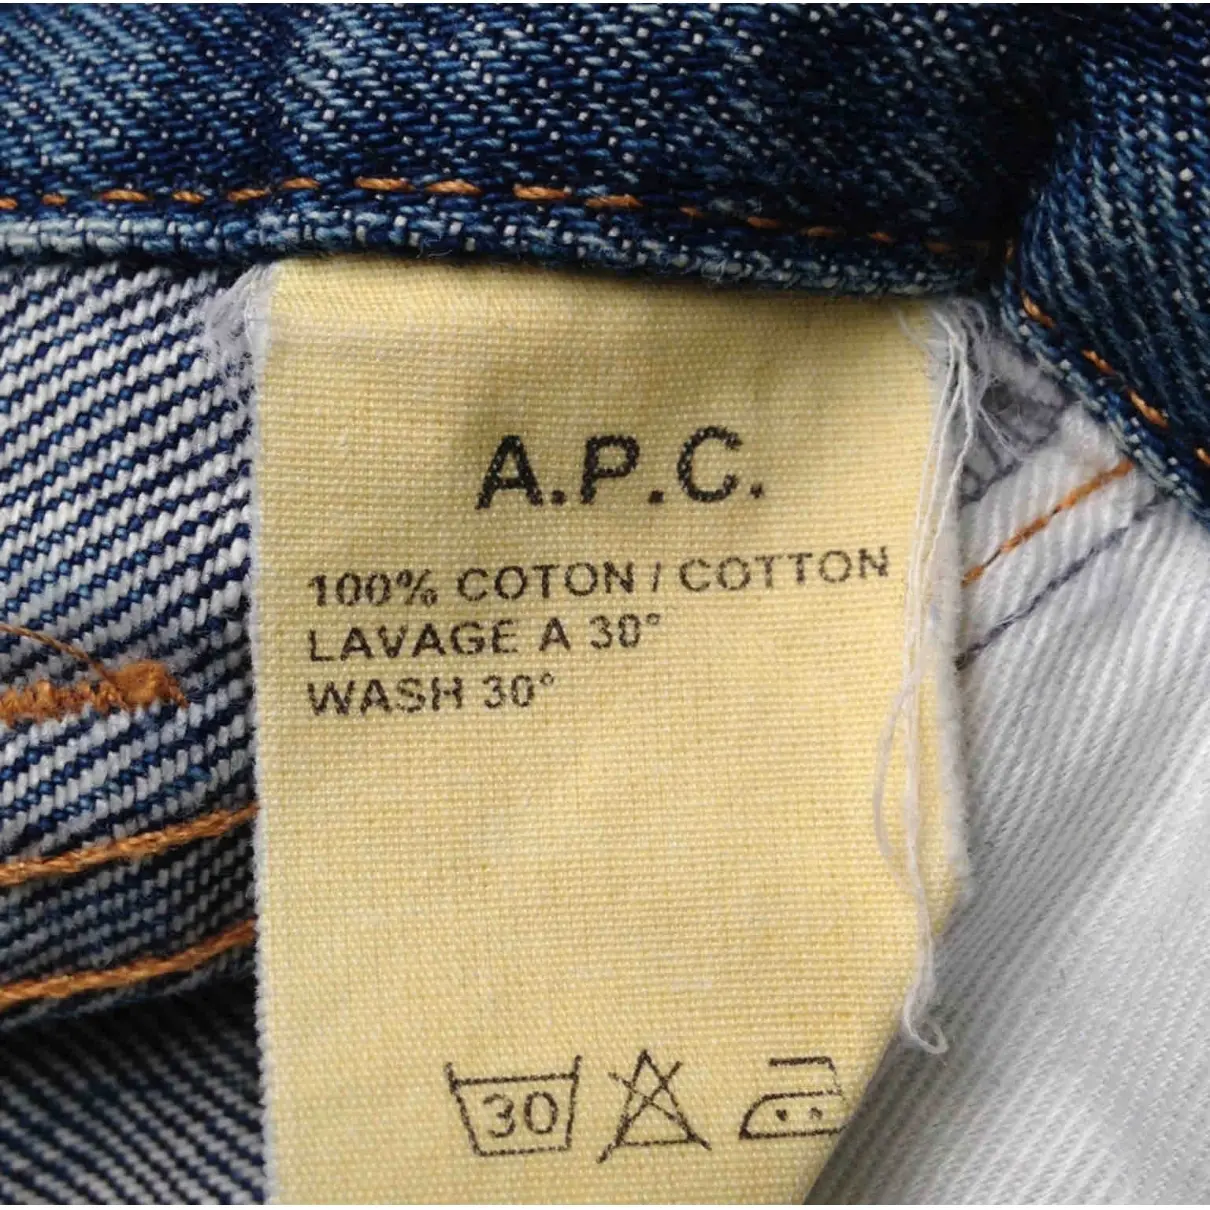 Luxury APC Jeans Women